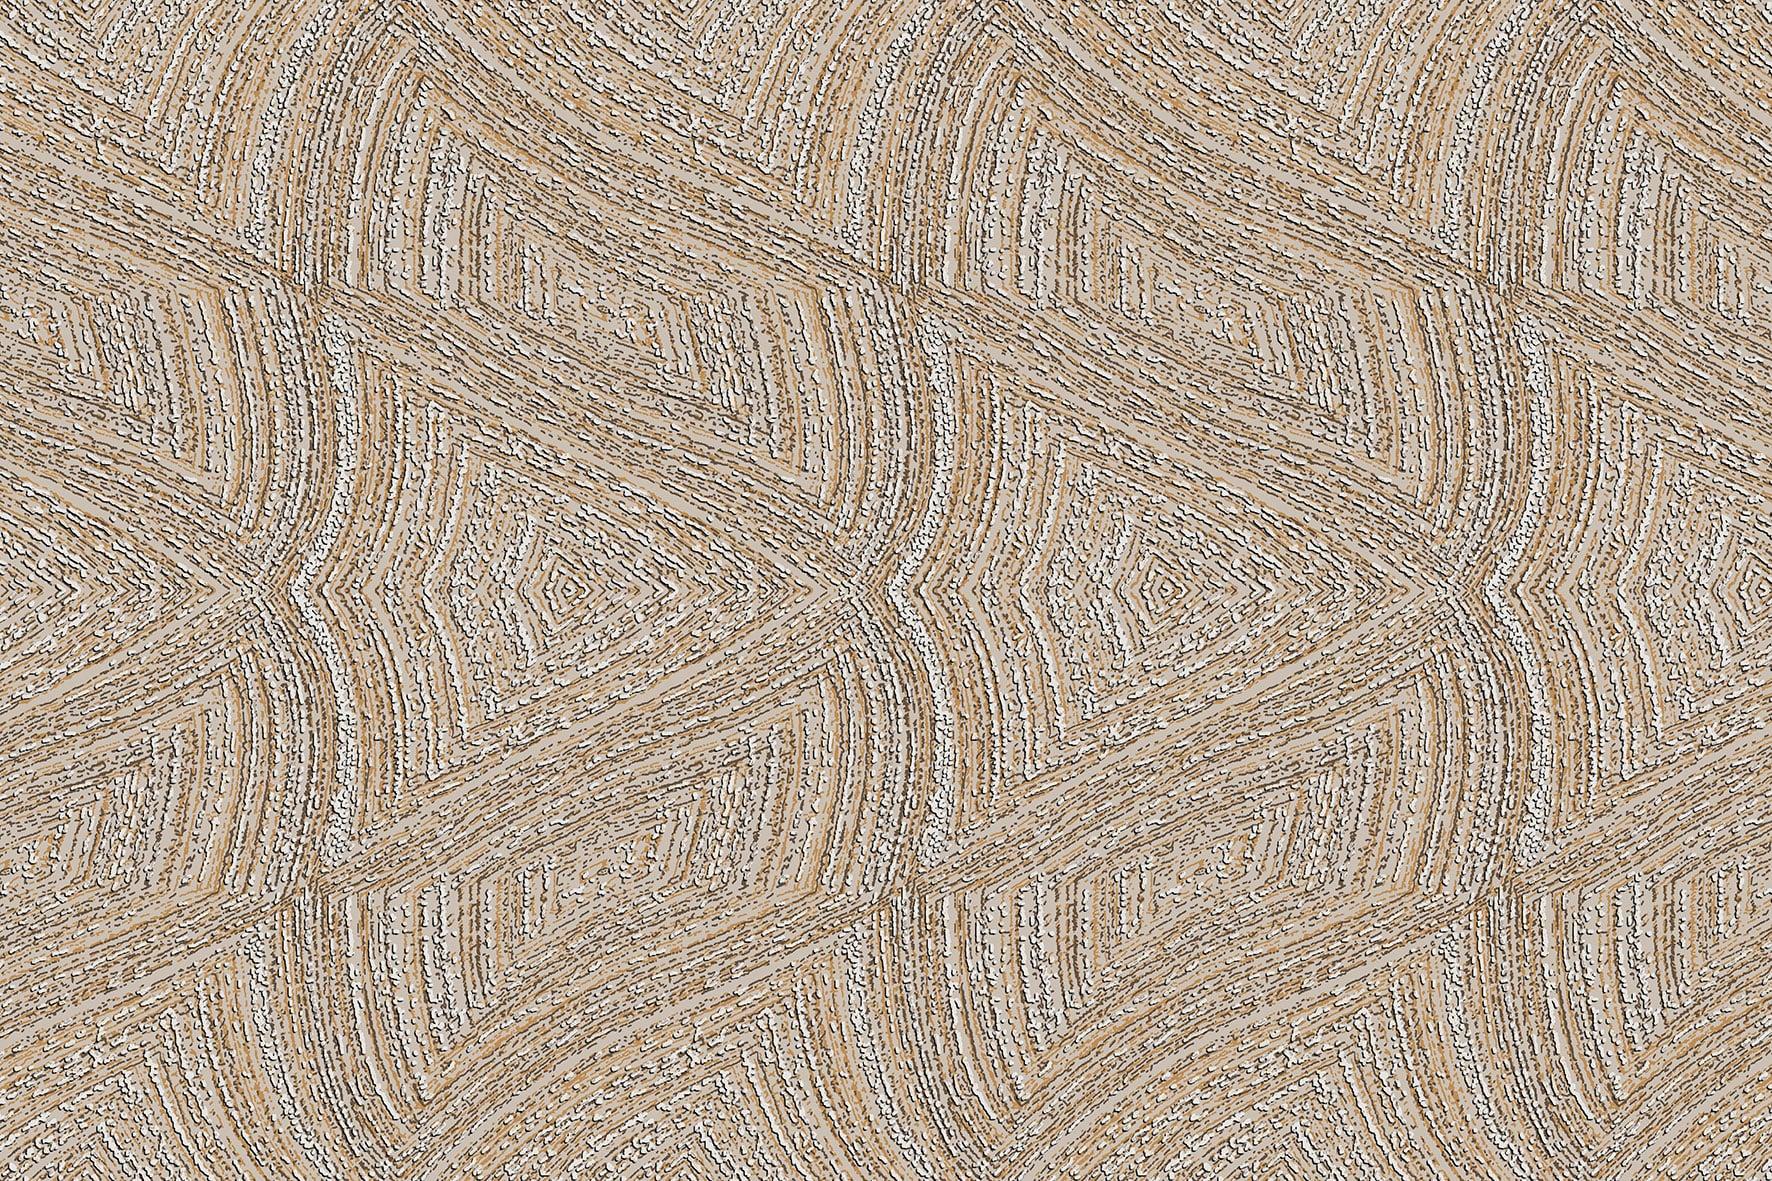 Sandune Tiles for Bathroom Tiles, Kitchen Tiles